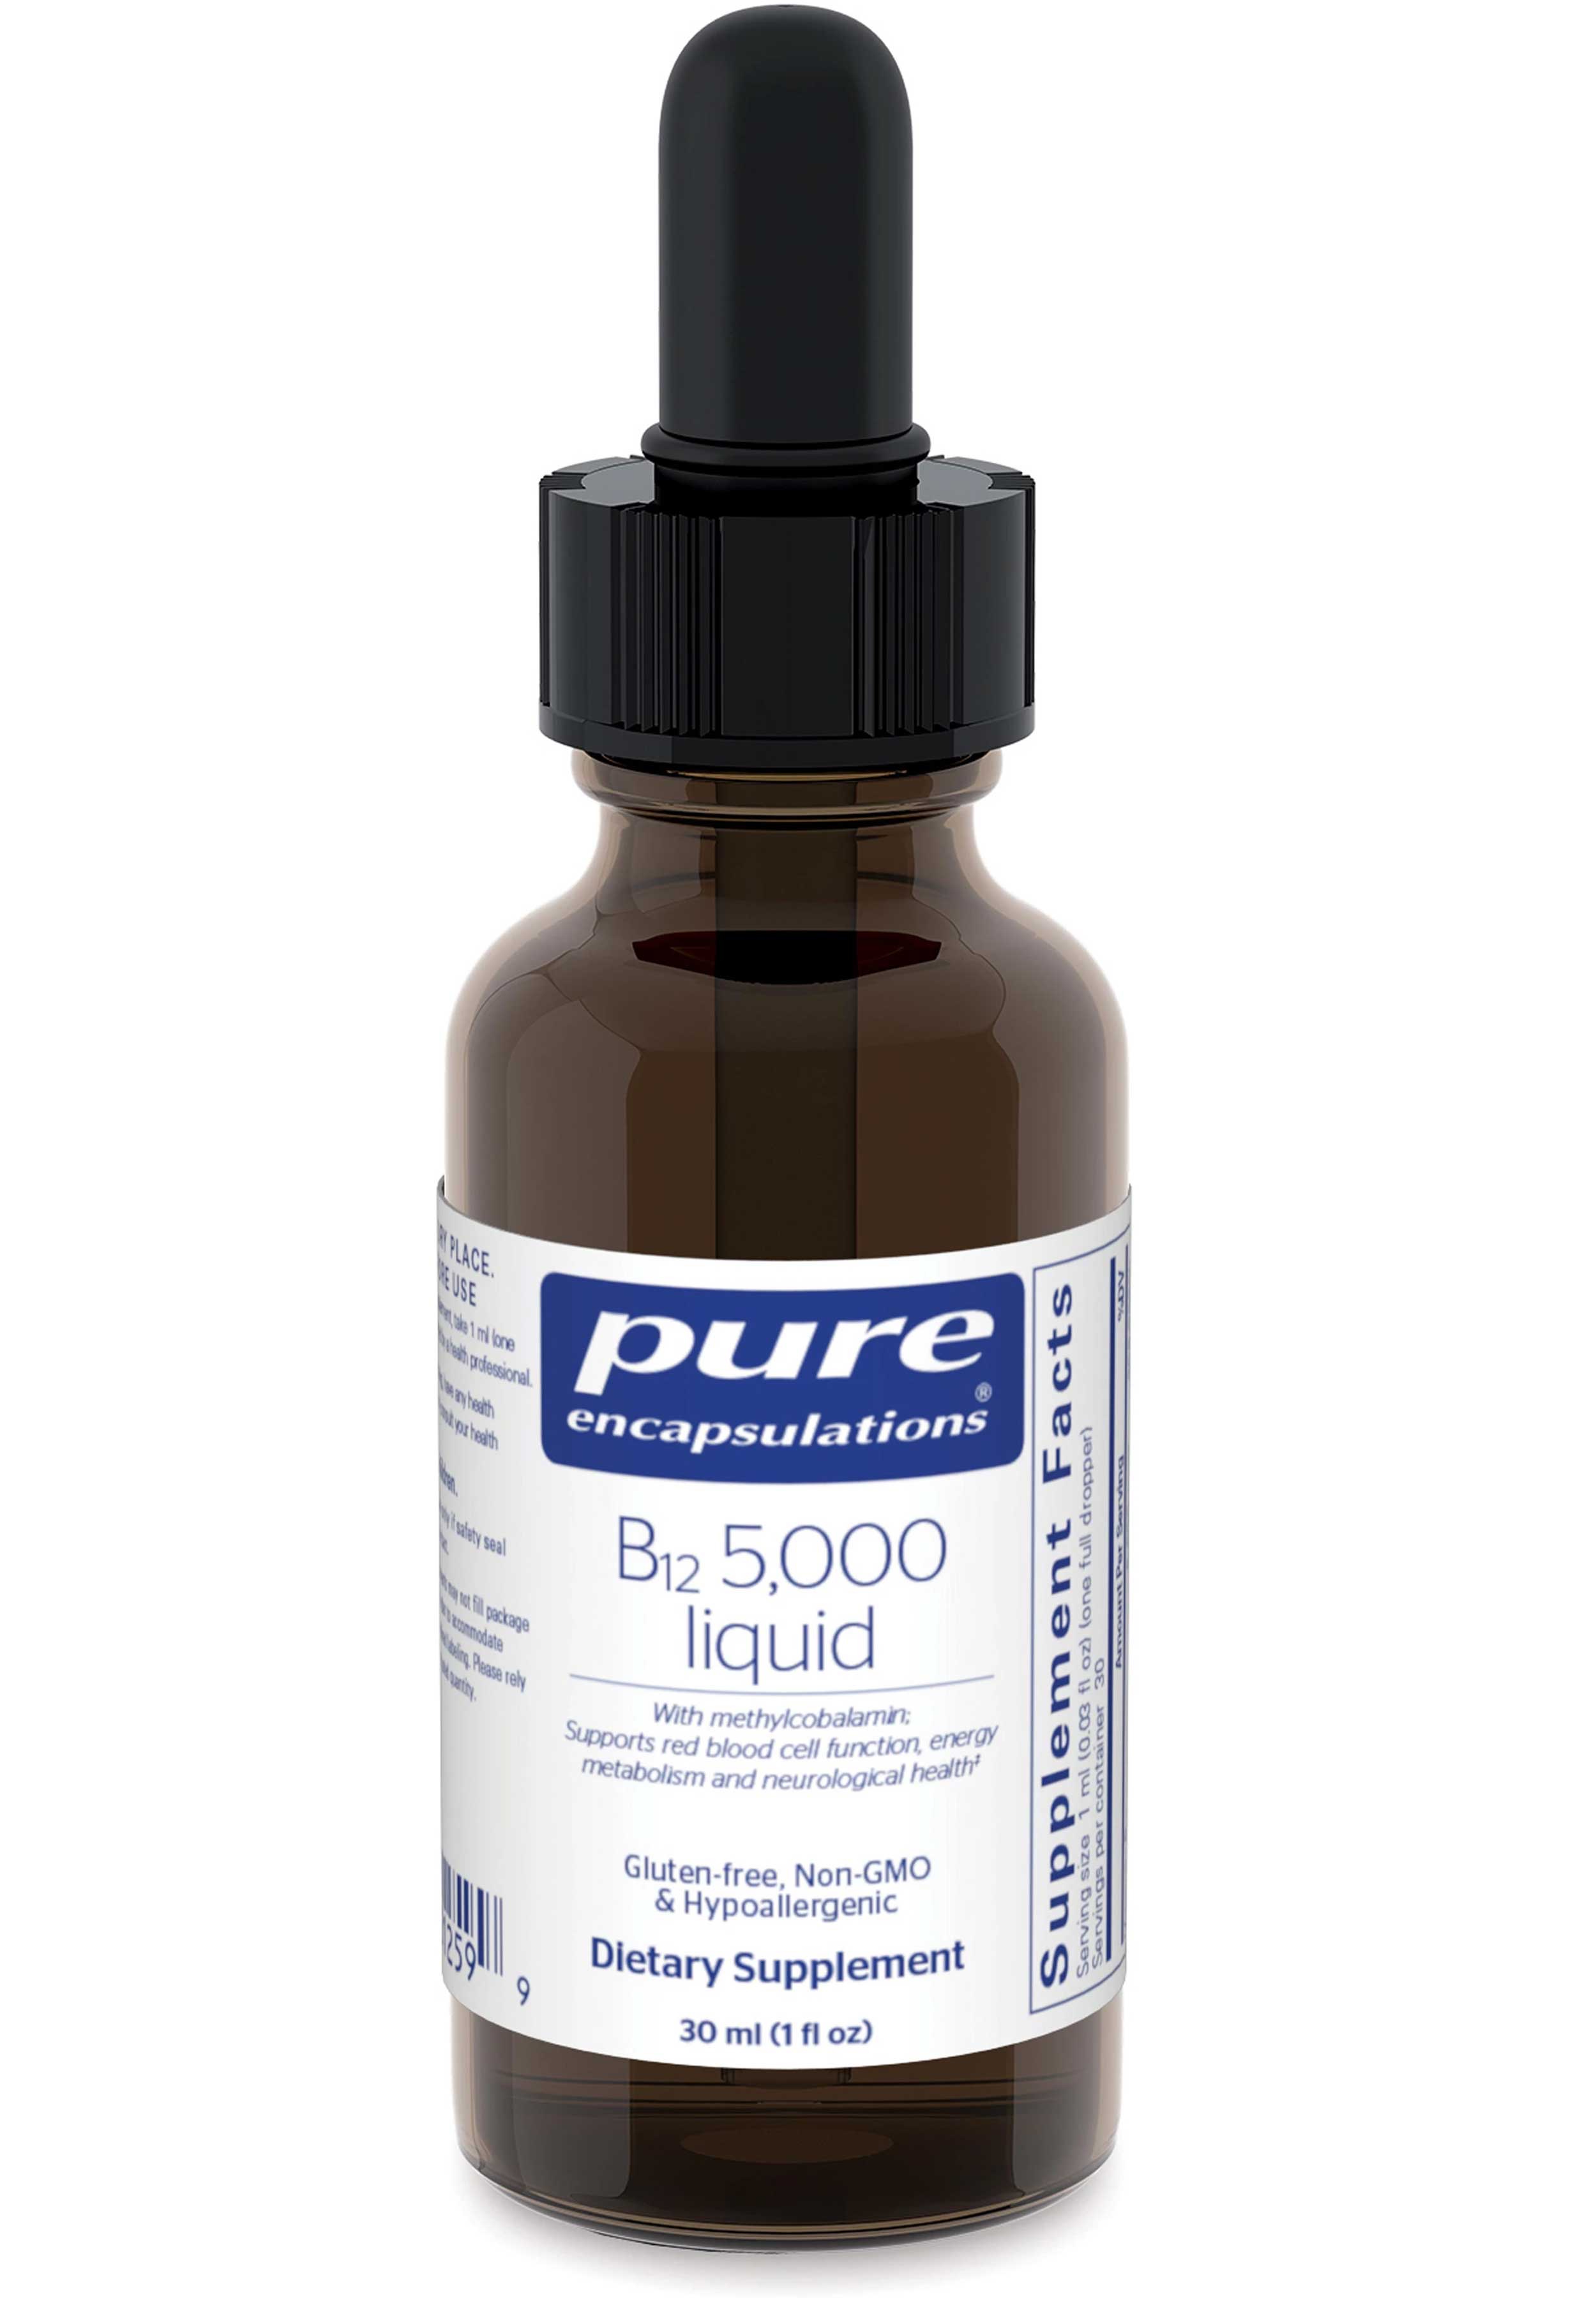 Pure Encapsulations B12 5,000 Liquid